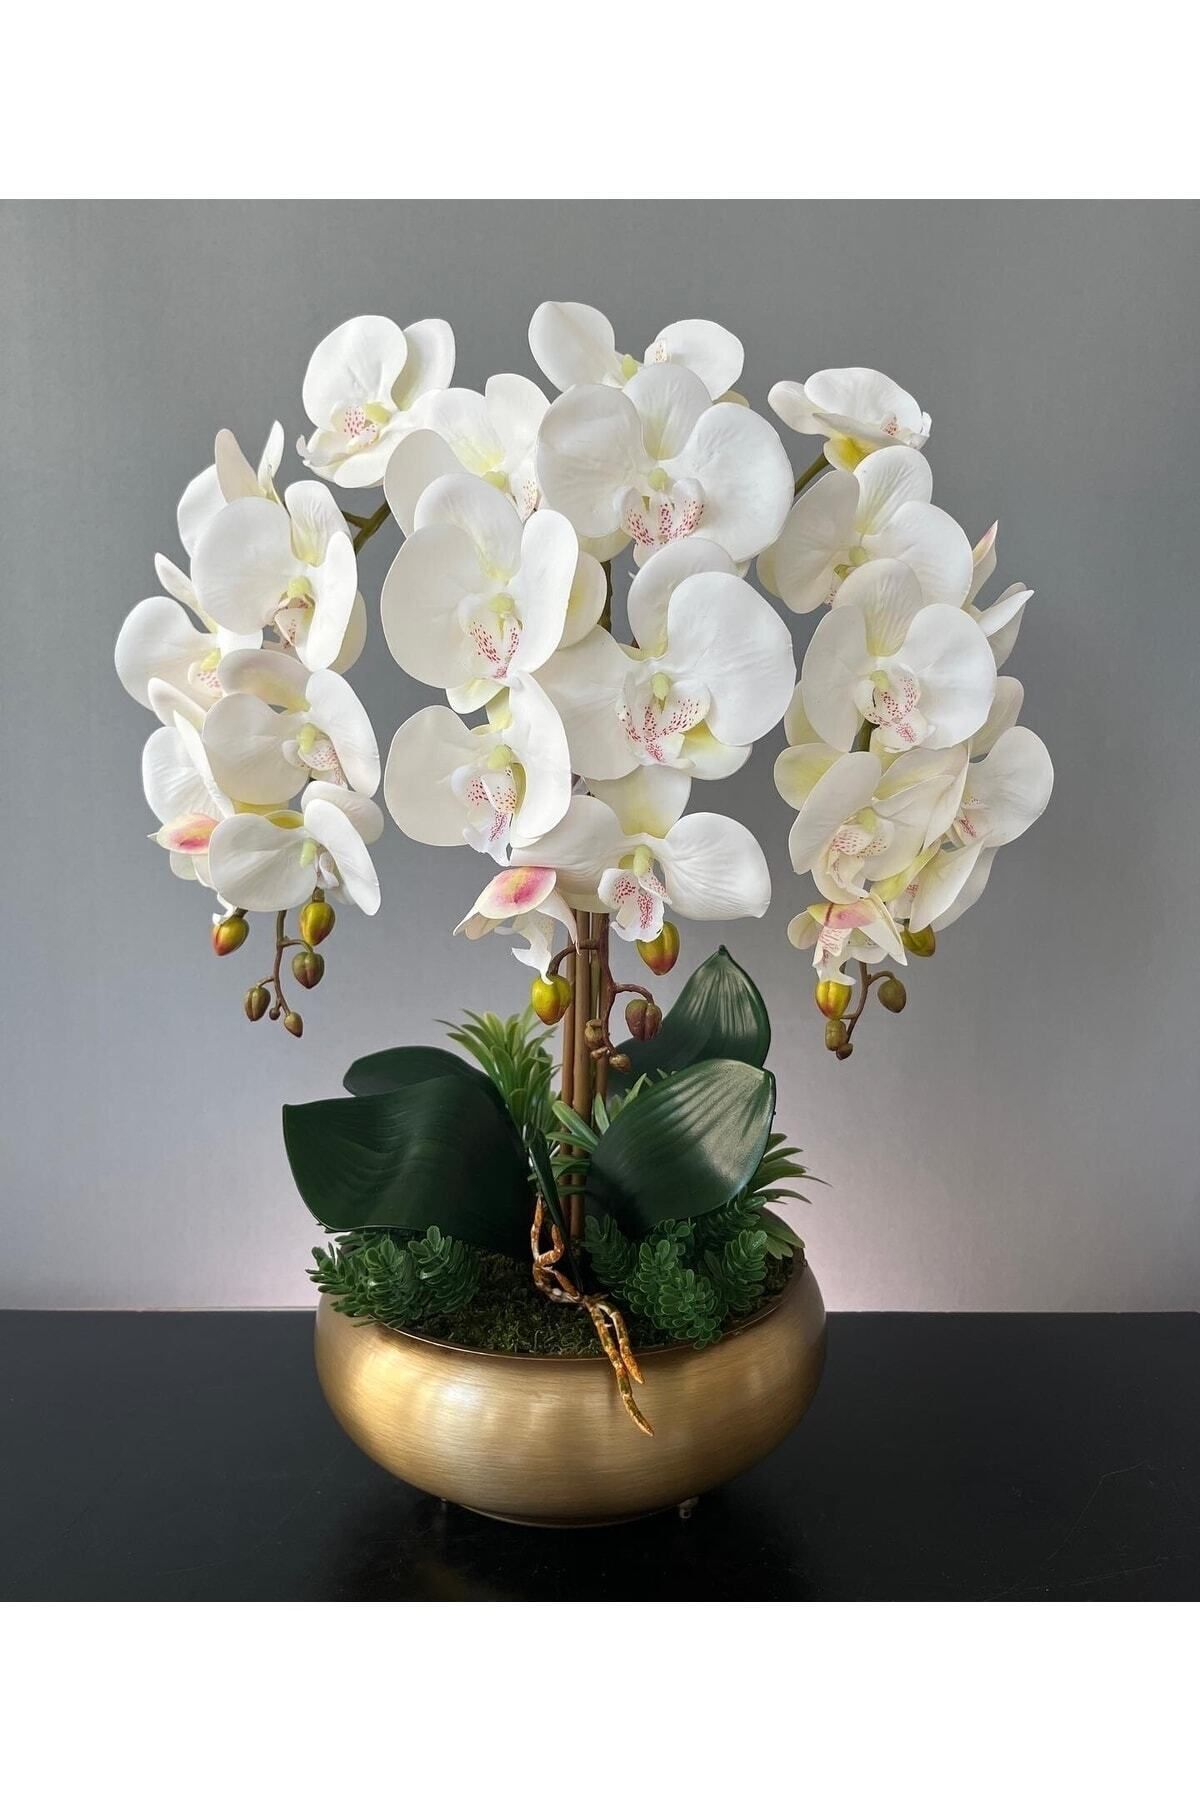 LİLOTEHOME Yapay Islak 3 Beyaz Orkide Aranjman Ufo Eskitme Mat Gold Saksıda